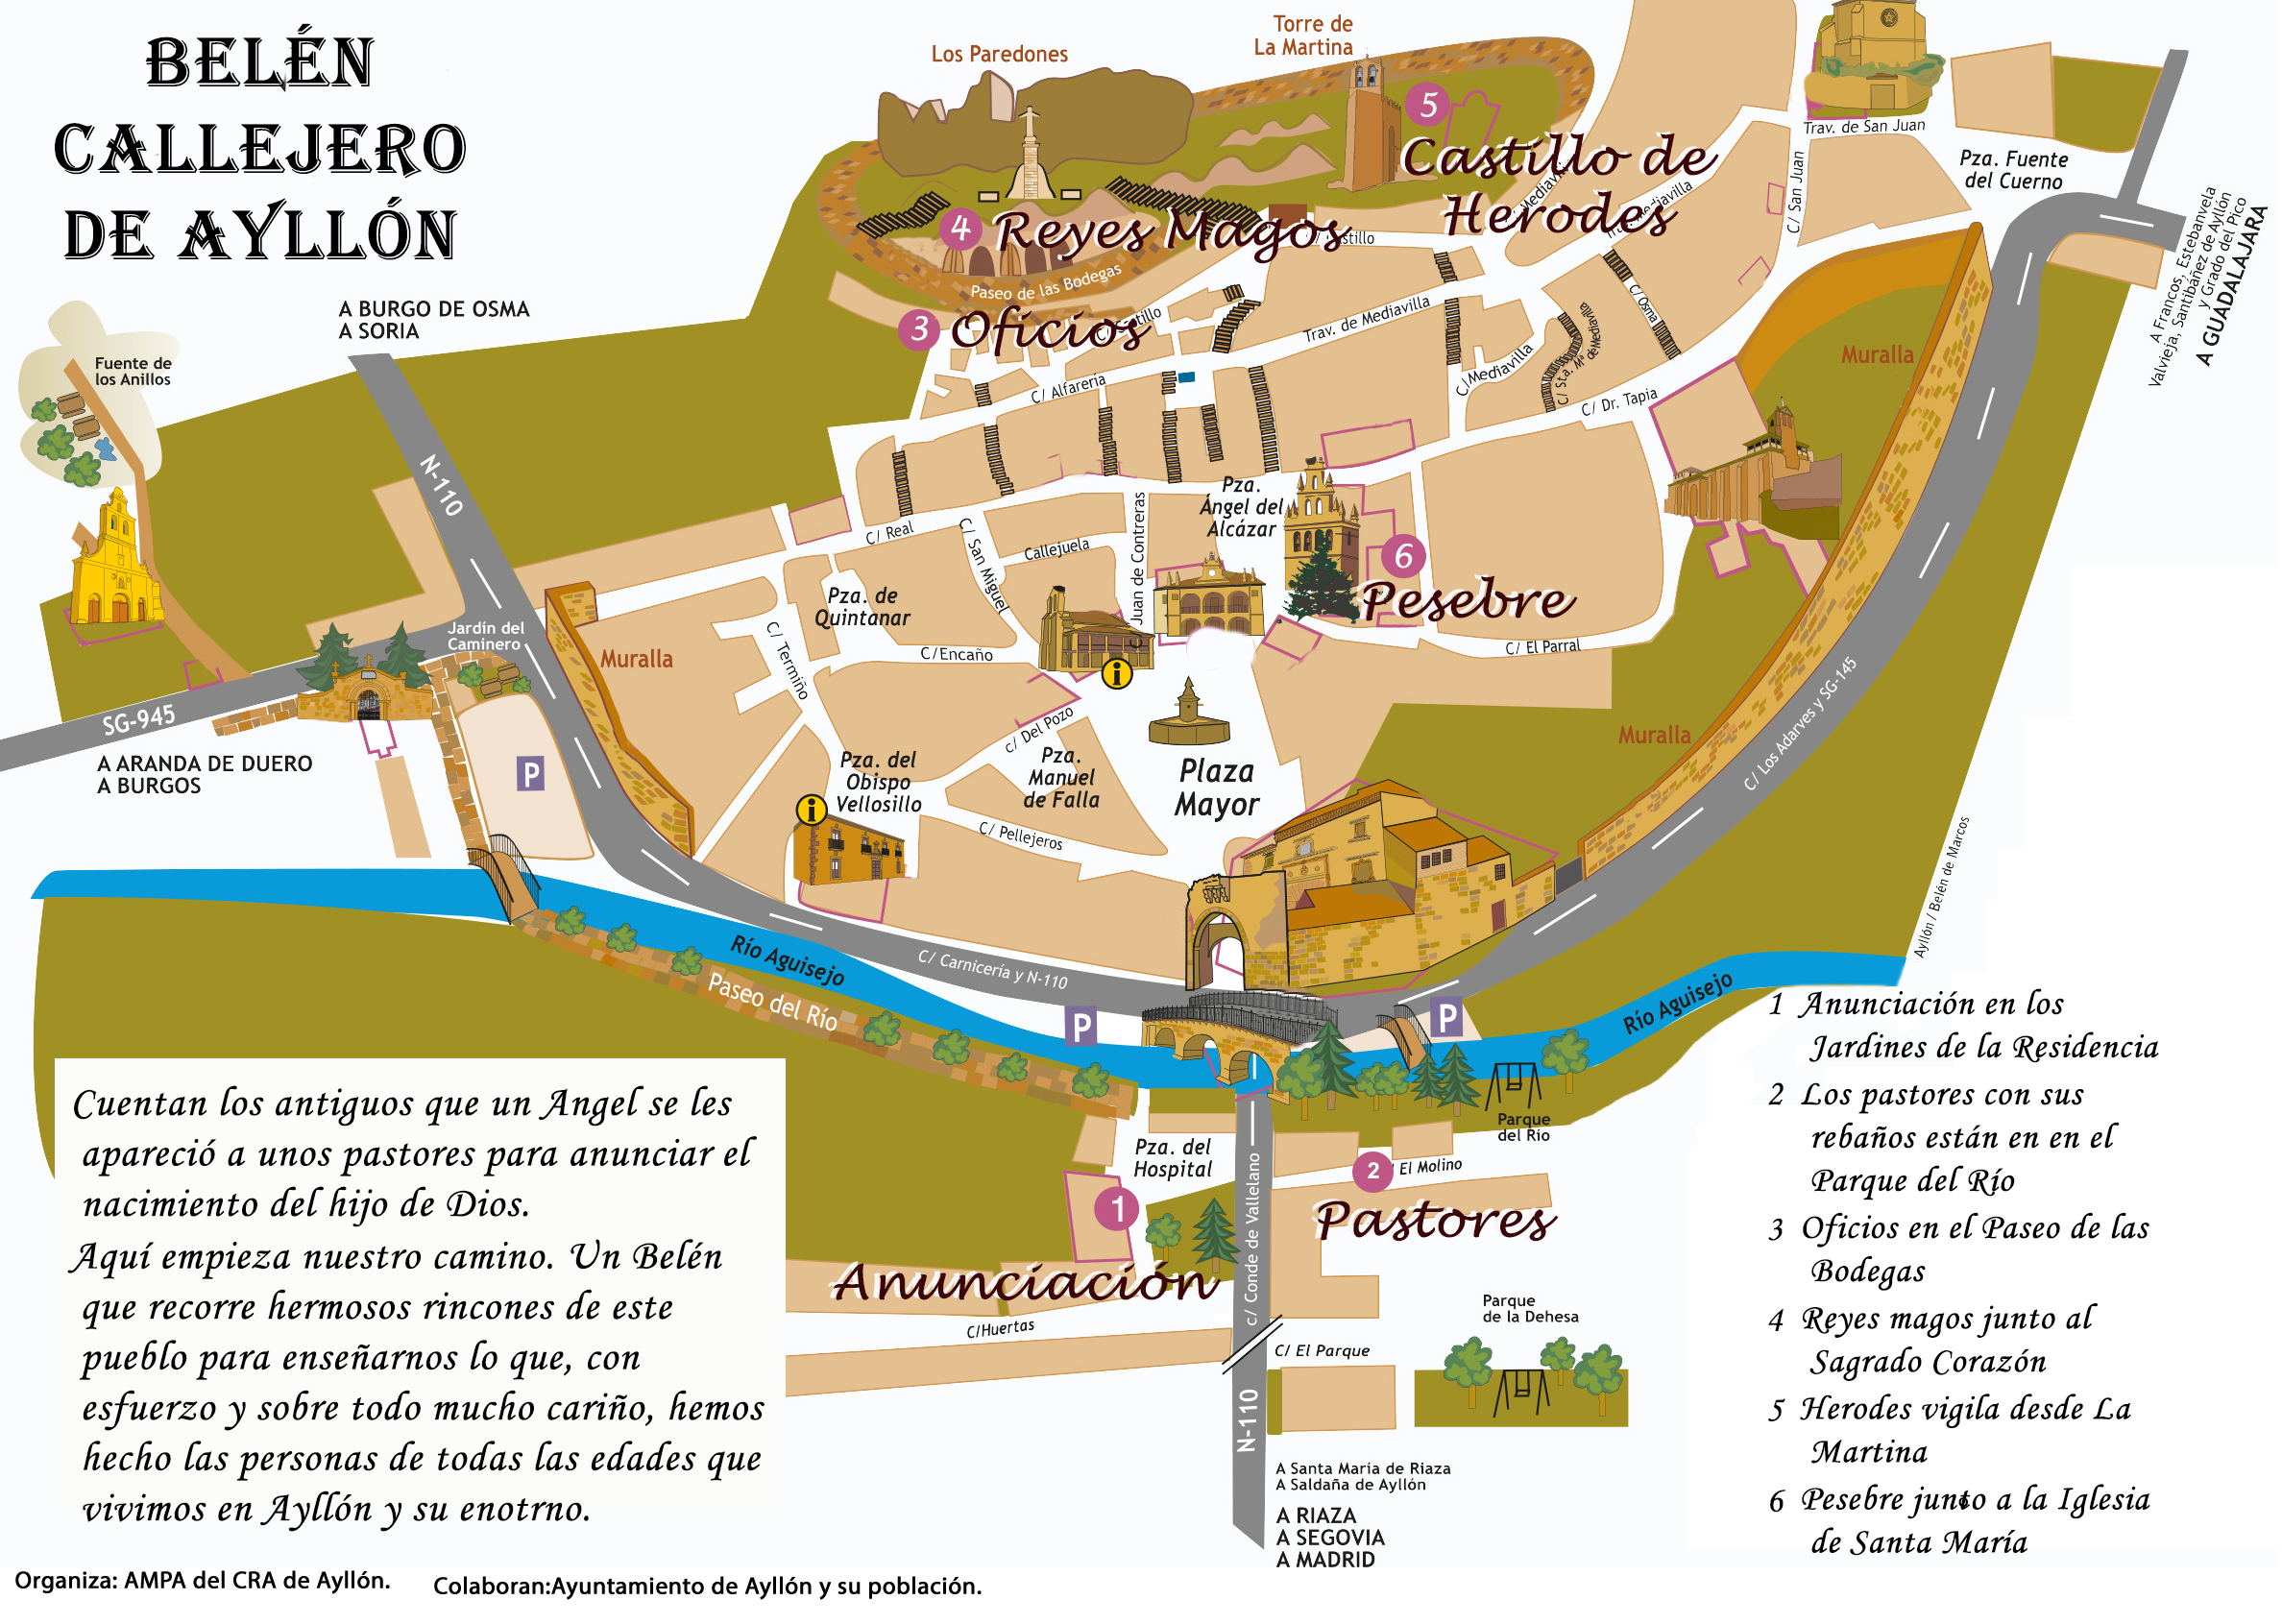 Plano del belén callejero de Ayllón